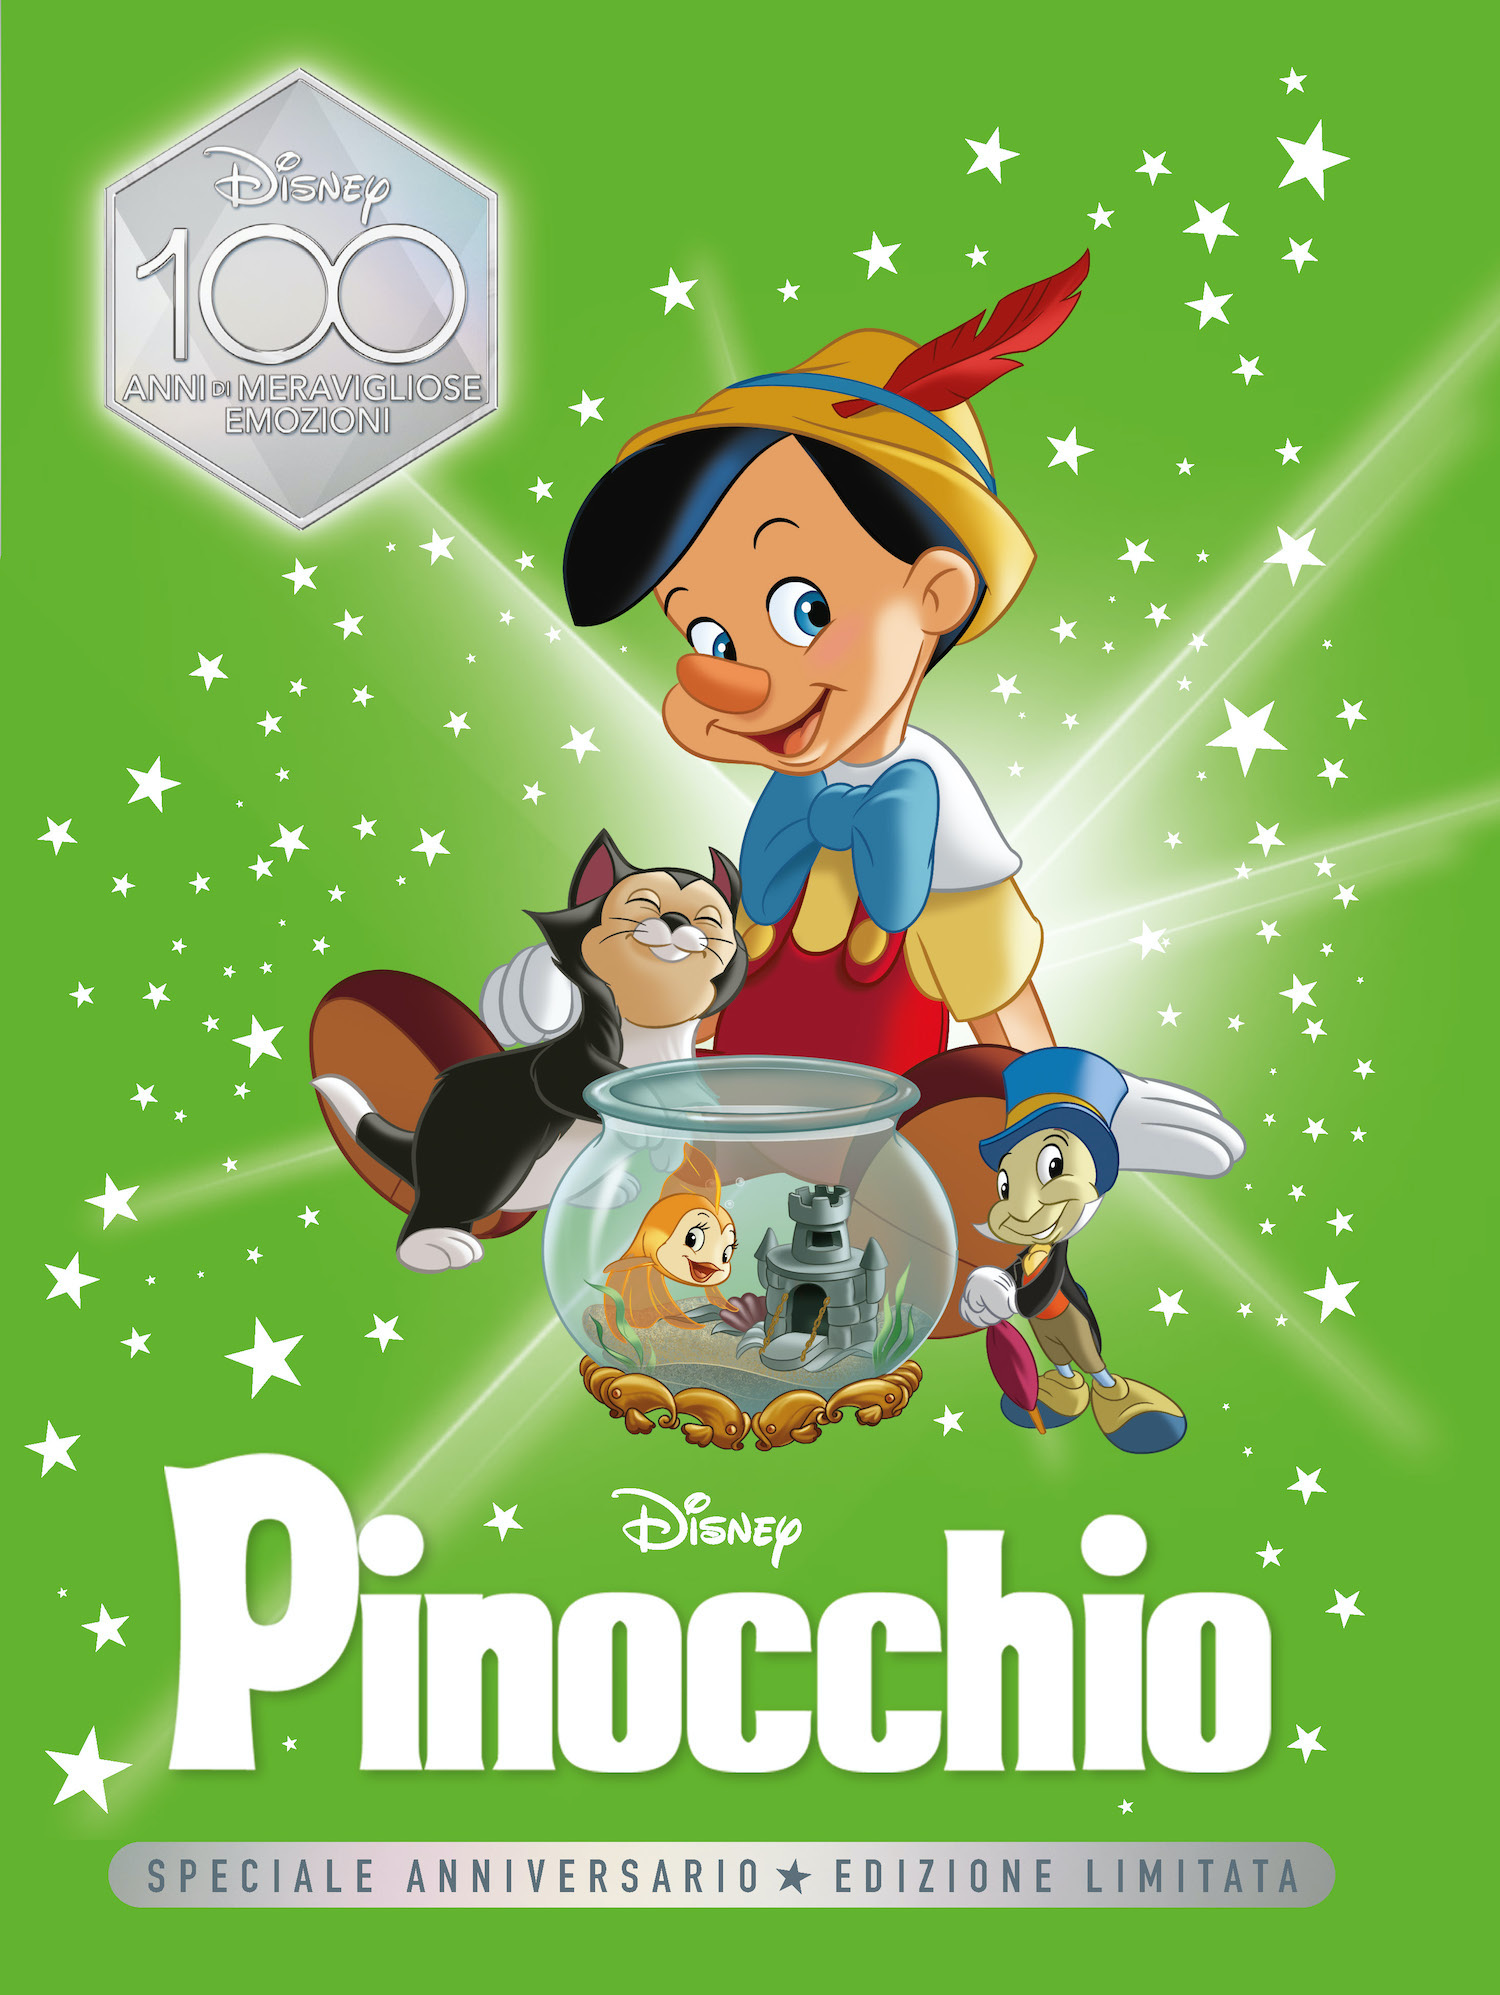 Pinocchio Speciale Anniversario Edizione limitata